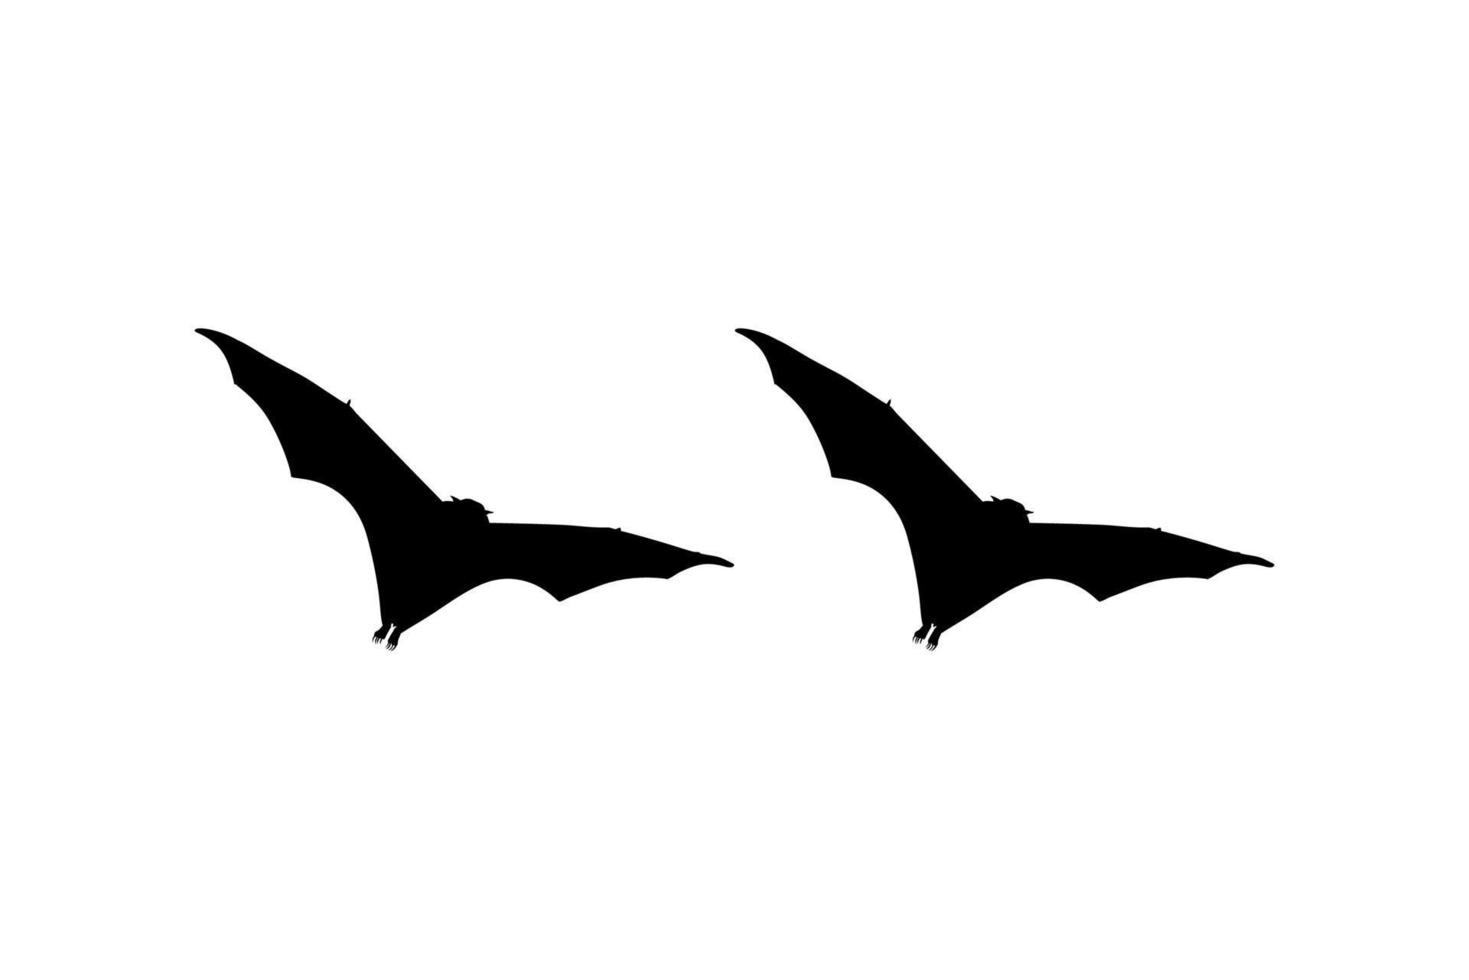 silueta de la pareja de zorro volador o murciélago para icono, símbolo, pictograma, logotipo, sitio web o elemento de diseño gráfico. ilustración vectorial vector